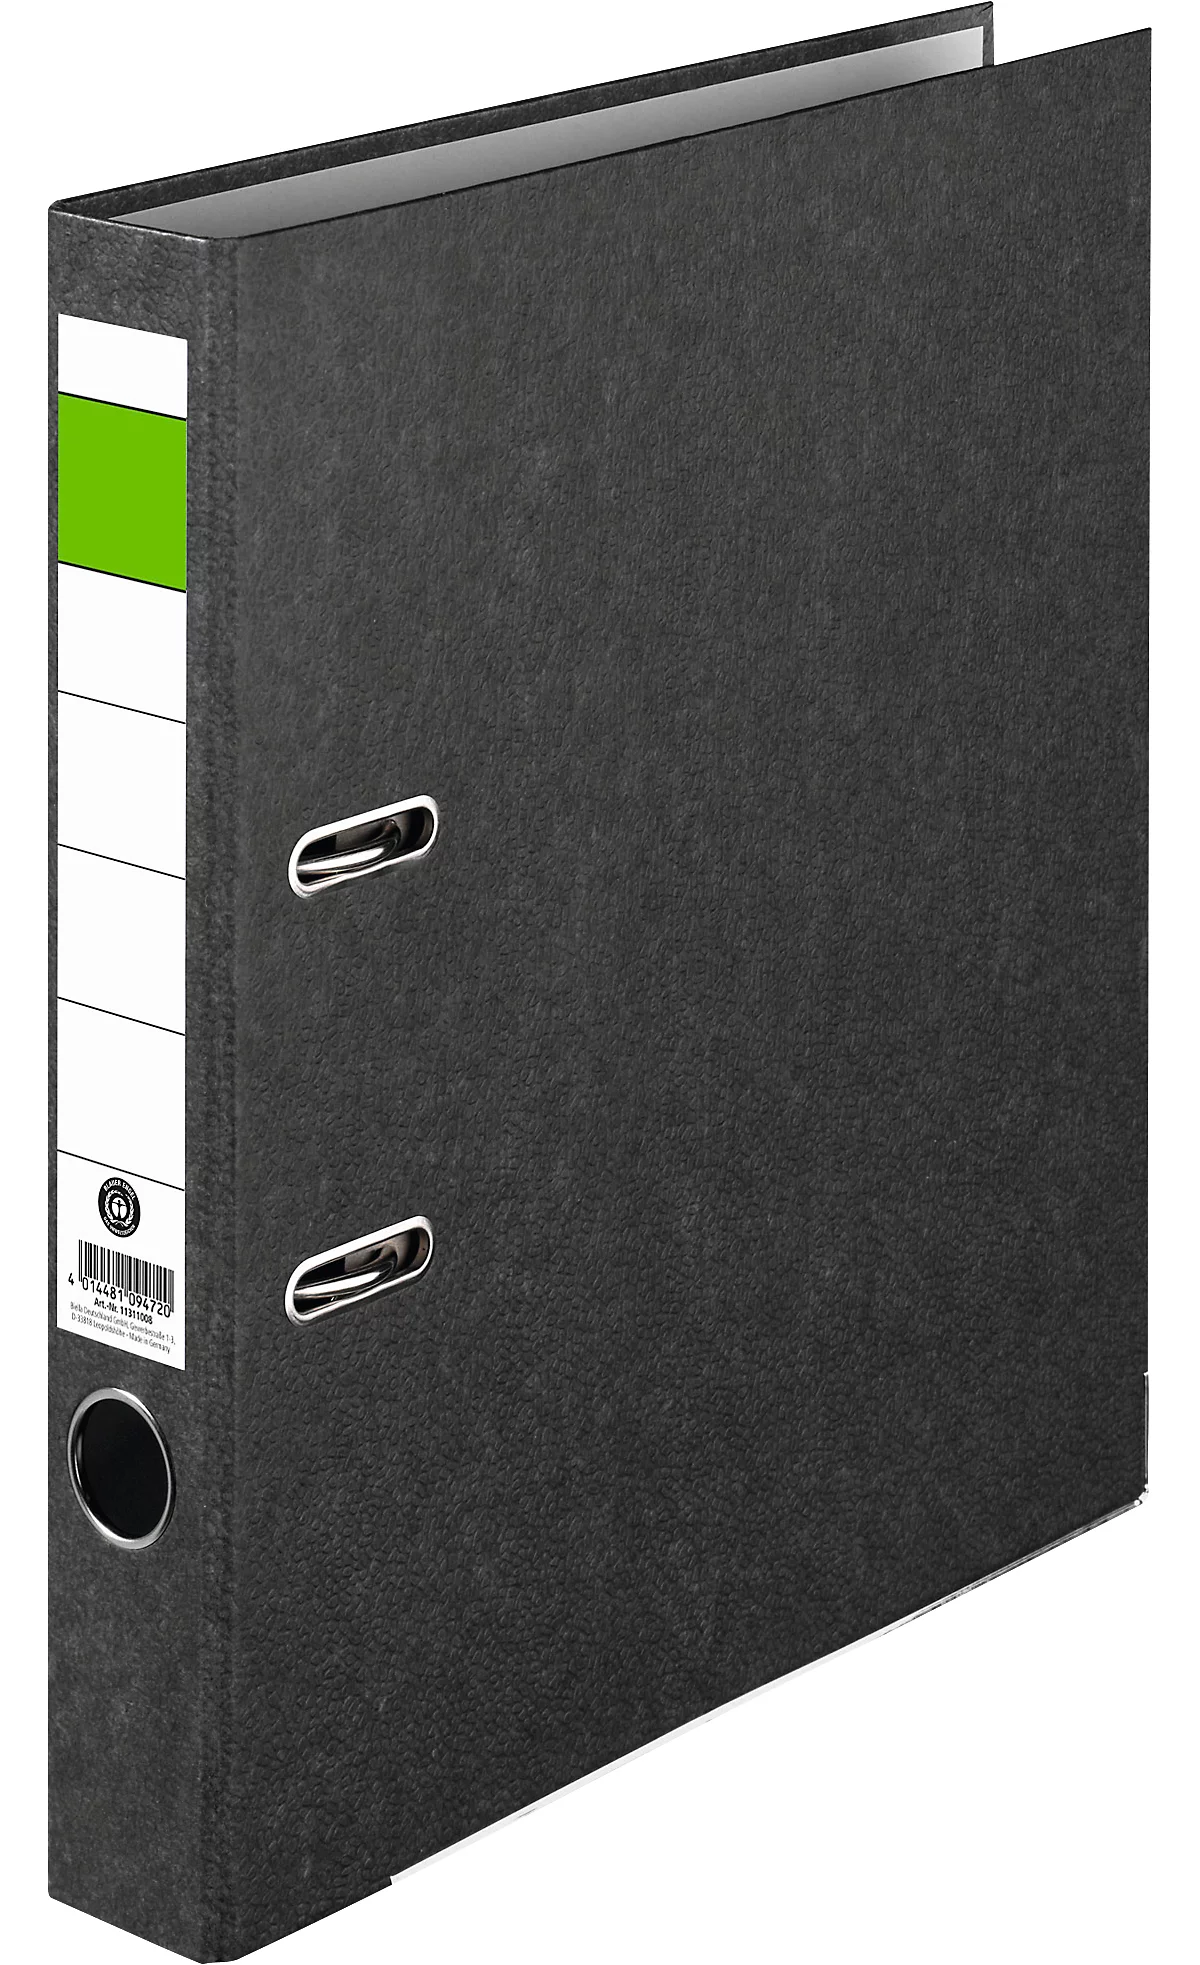 Carpeta barra verde, A4, ancho del lomo 50 mm, mecanismo de calidad, agujero de agarre y etiqueta trasera pegada, cartón duro reciclado negro jaspeado, 25 unidades.